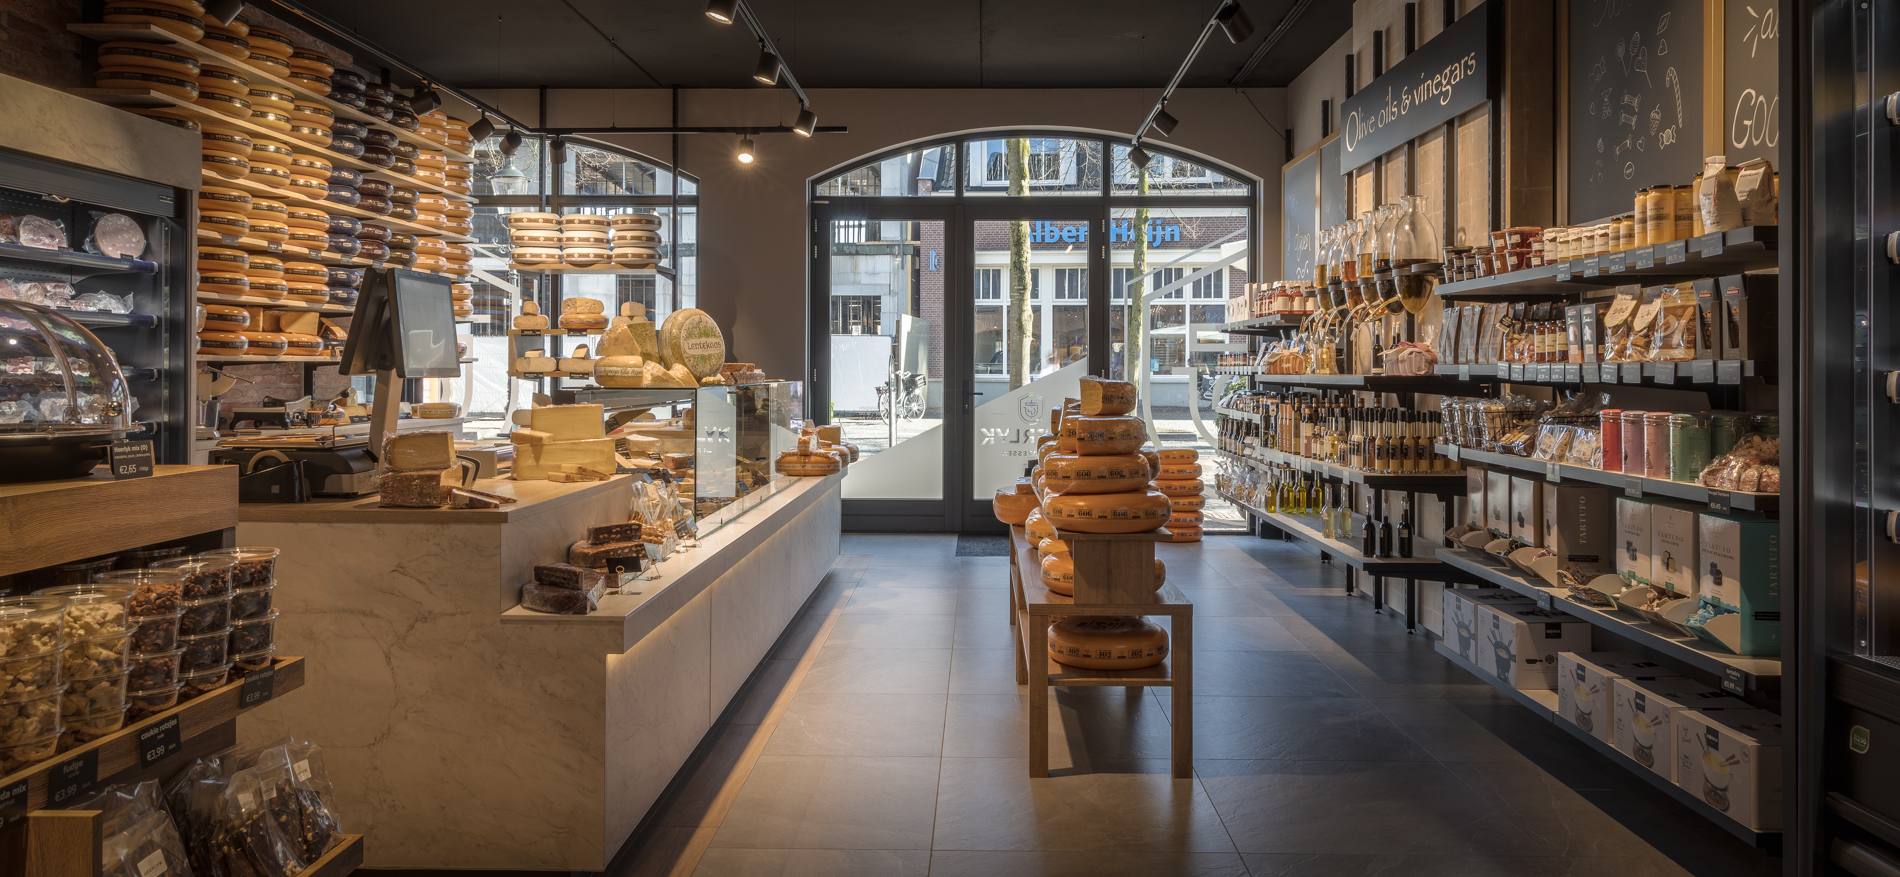 Heerlyk Delicatessen | Lunteren (NL) - Food